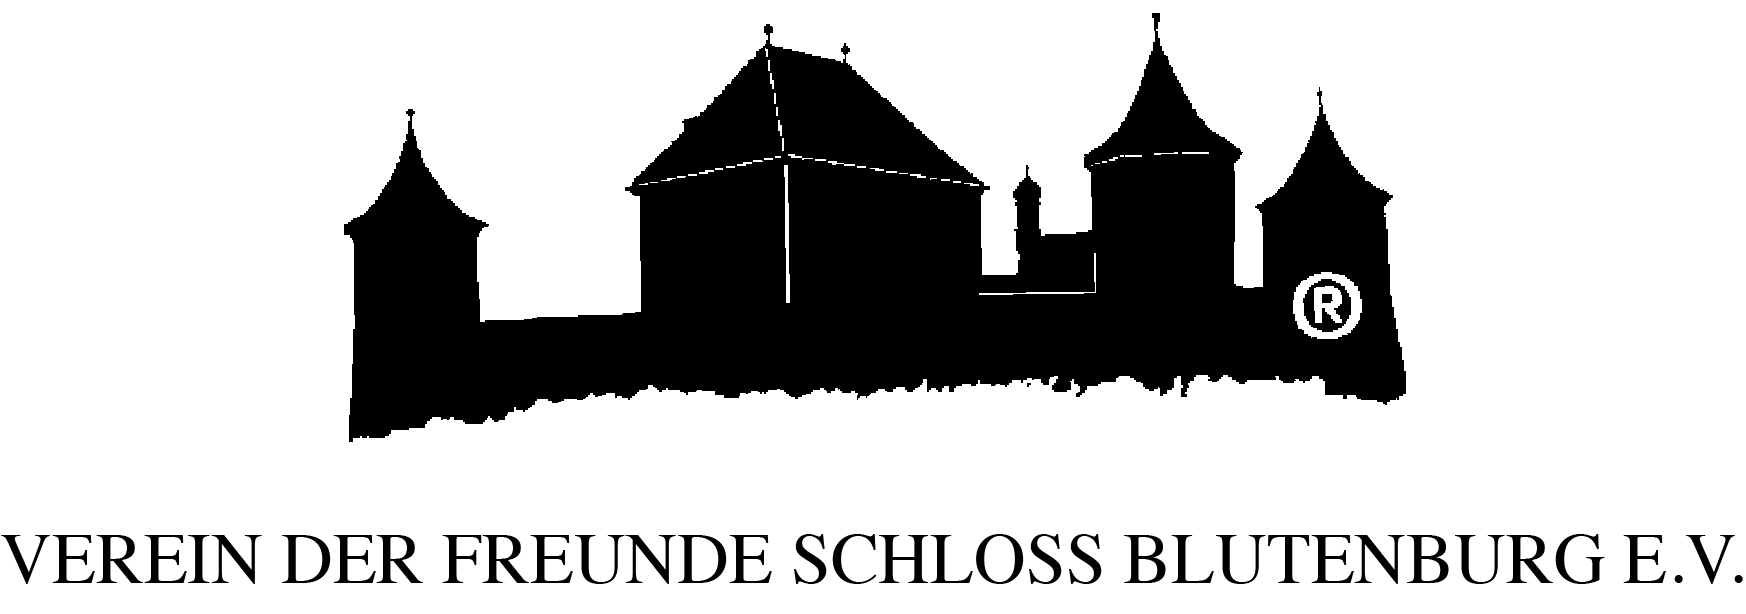 Schlosskonzerte Blutenburg